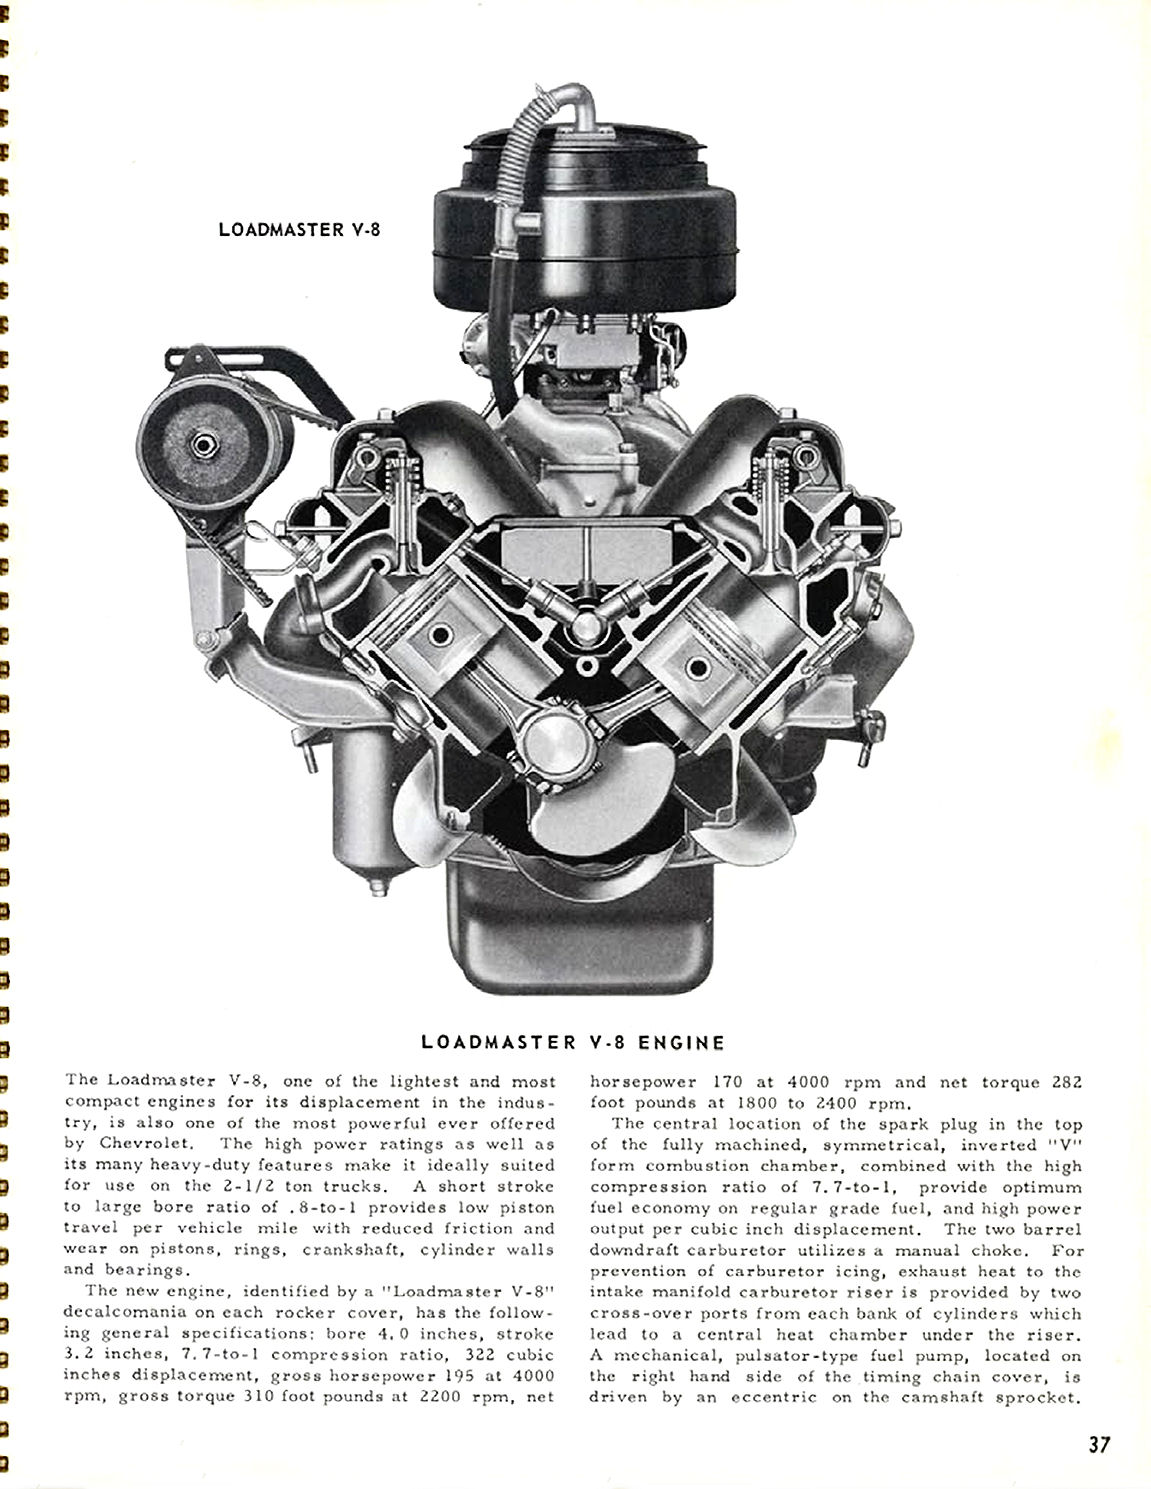 1956_Chevrolet_Truck_Engineering_Features-37